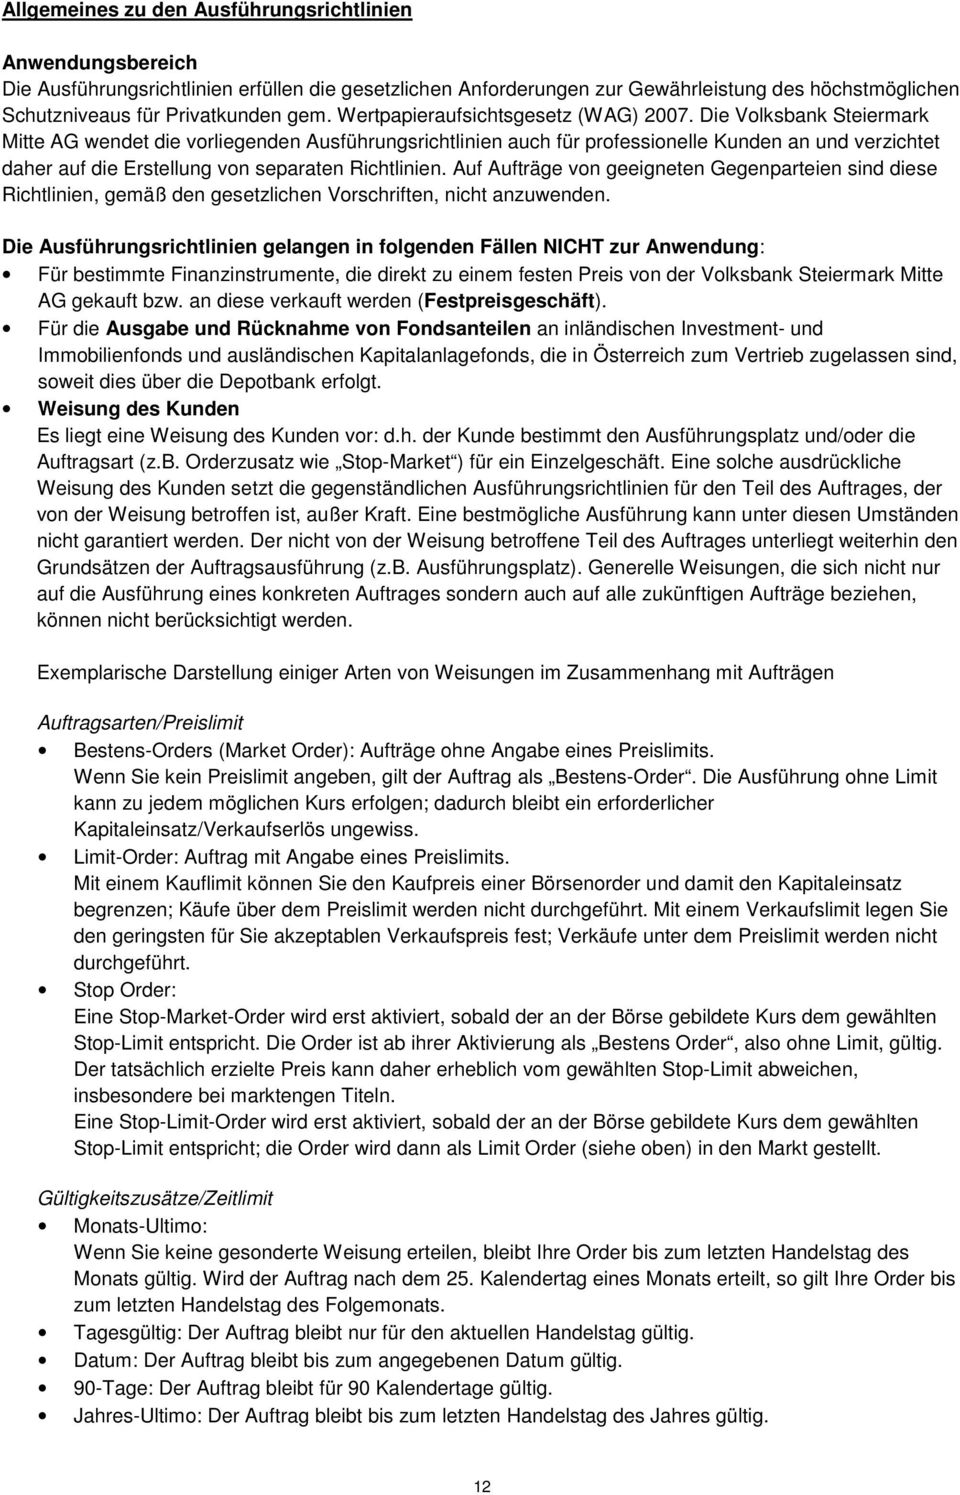 Die Volksbank Steiermark Mitte AG wendet die vorliegenden Ausführungsrichtlinien auch für professionelle Kunden an und verzichtet daher auf die Erstellung von separaten Richtlinien.